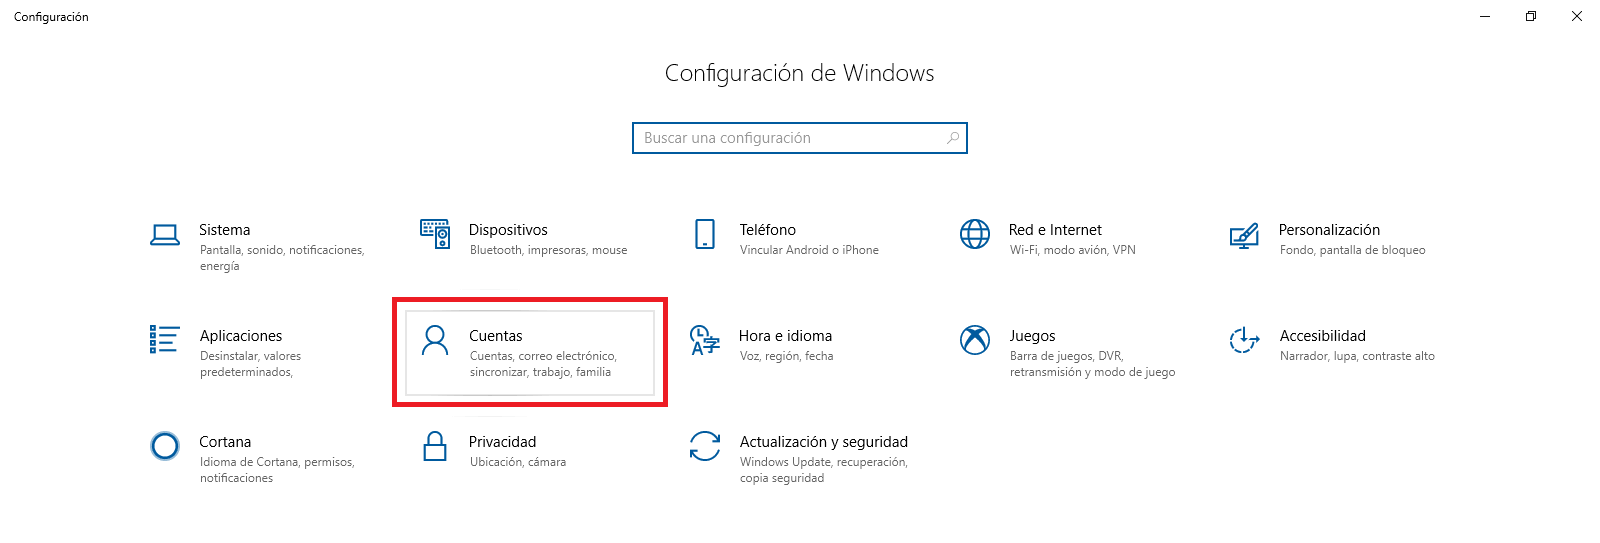 cambiar nombre de usuario en la pantalla de inicio de sesión de windows 10